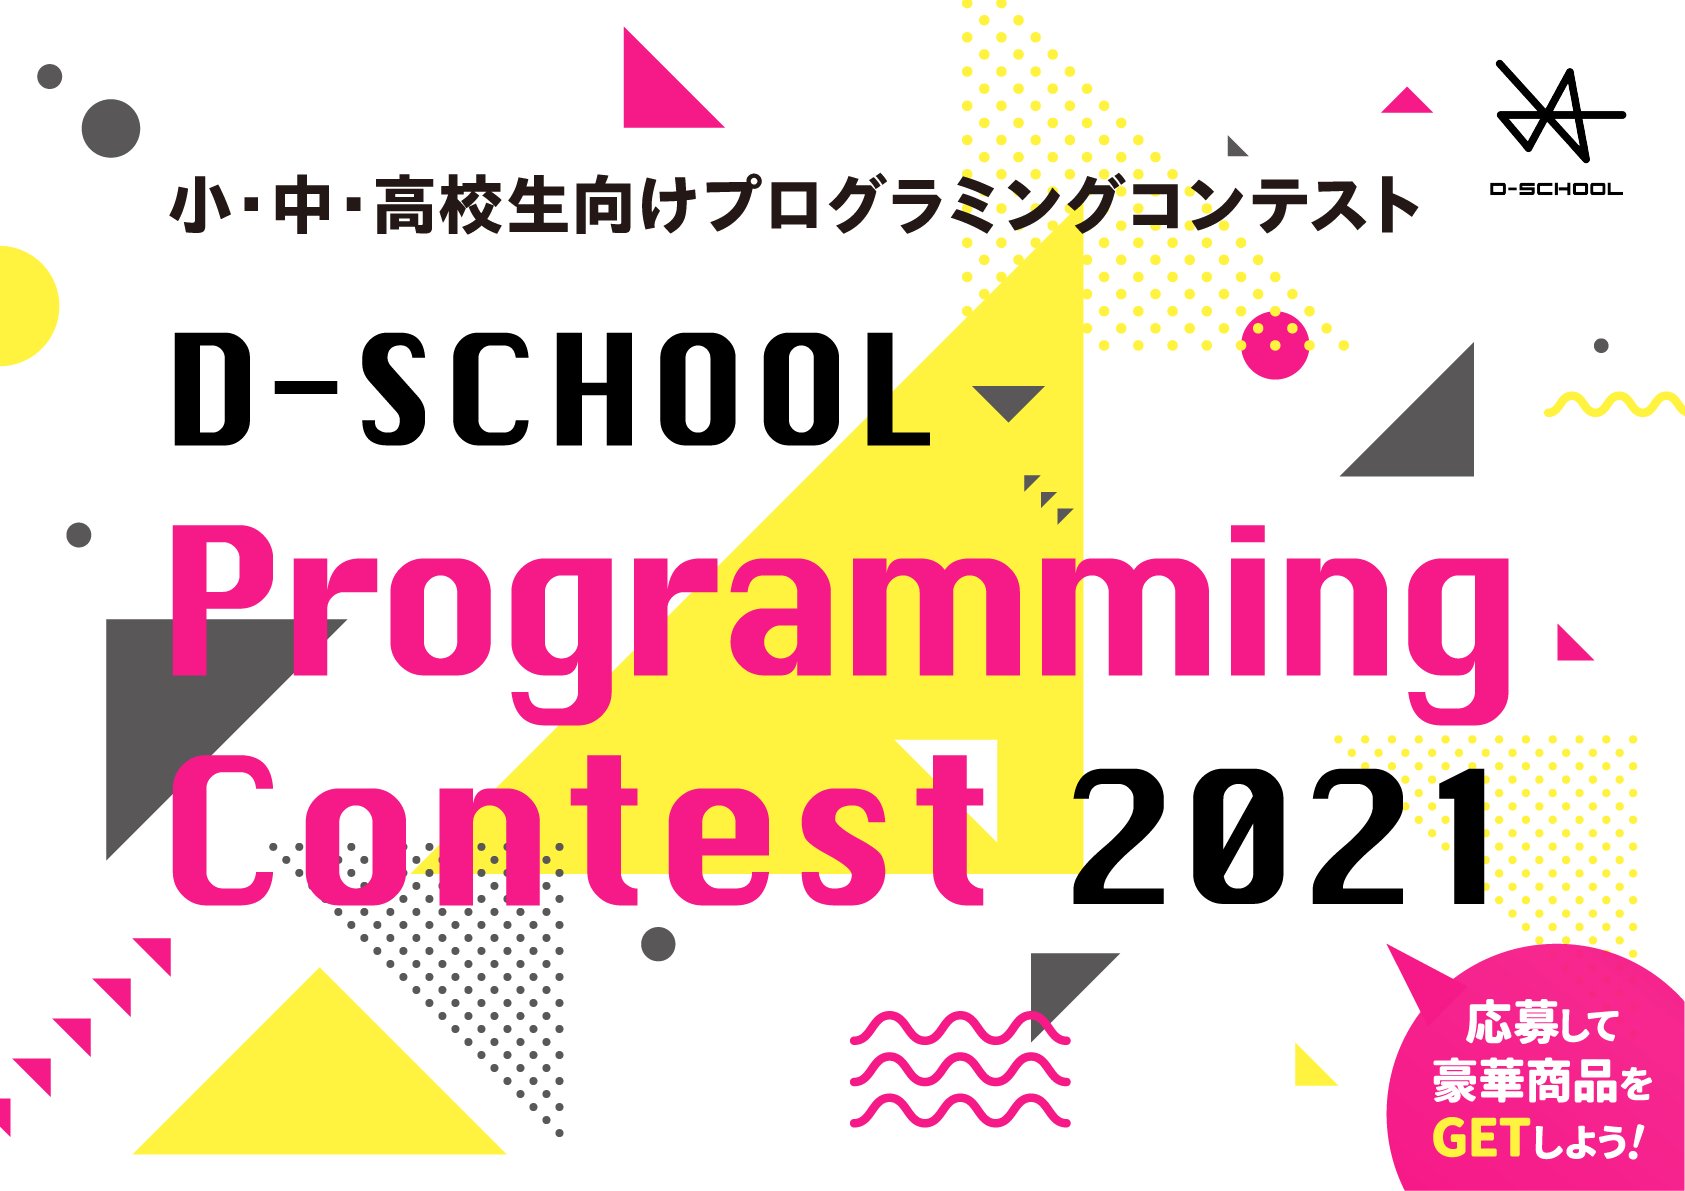 プログラミングを武器に未来を生きよう！ D-SCHOOL PROGRAMMING CONTEST 2022 小・中学生向け プログラミングコンテスト 2022